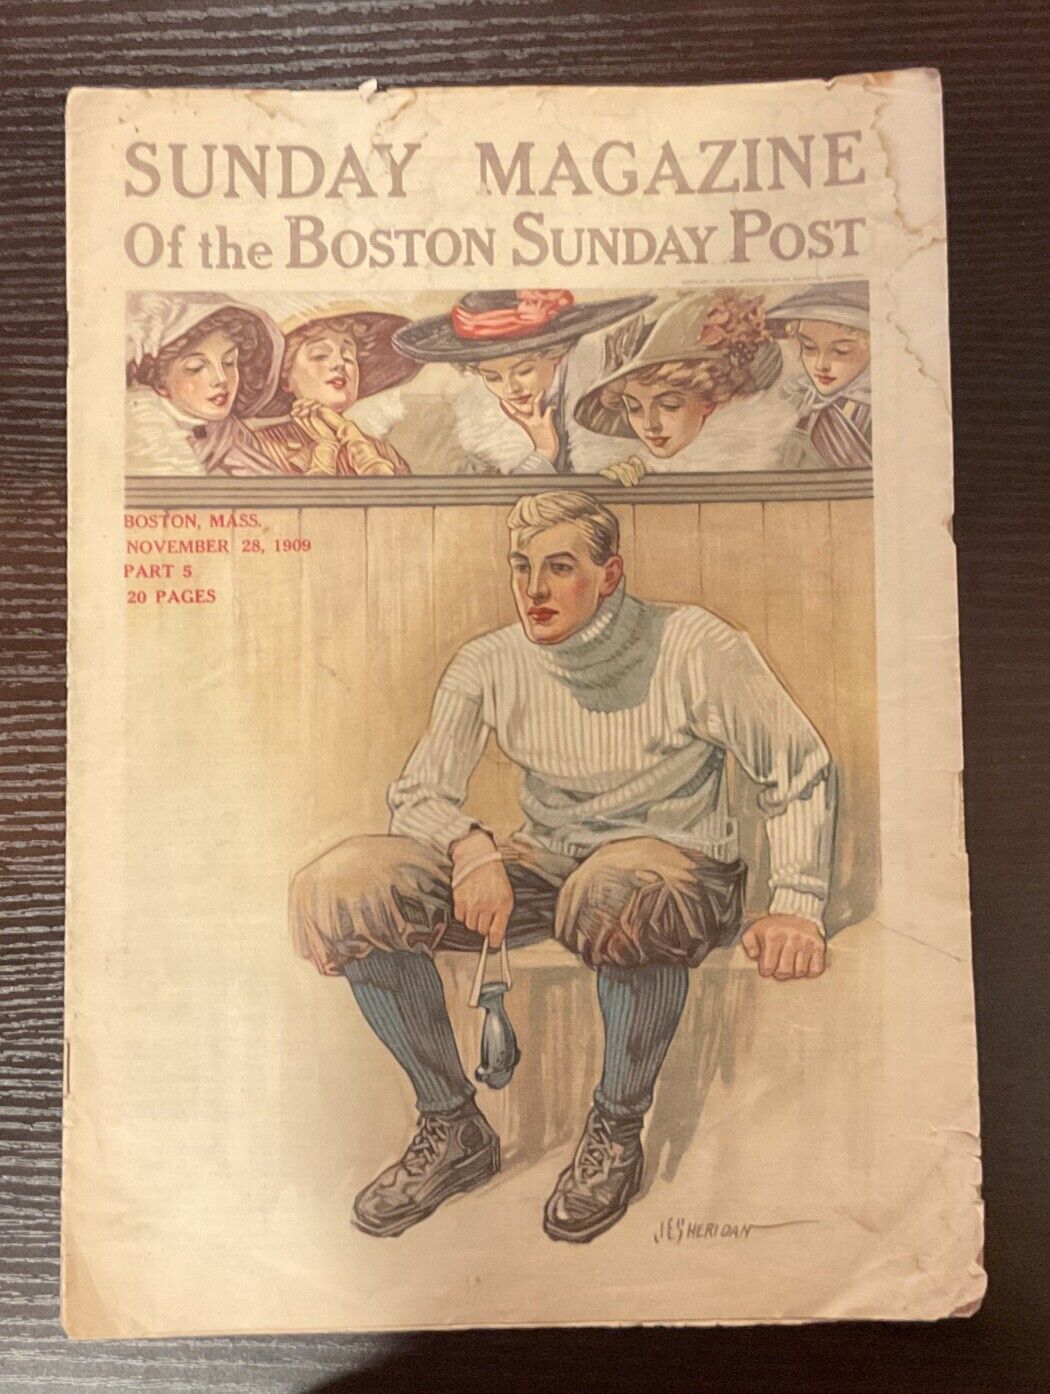 Sunday Magazine of the Boston Sunday Post – November 28 1909